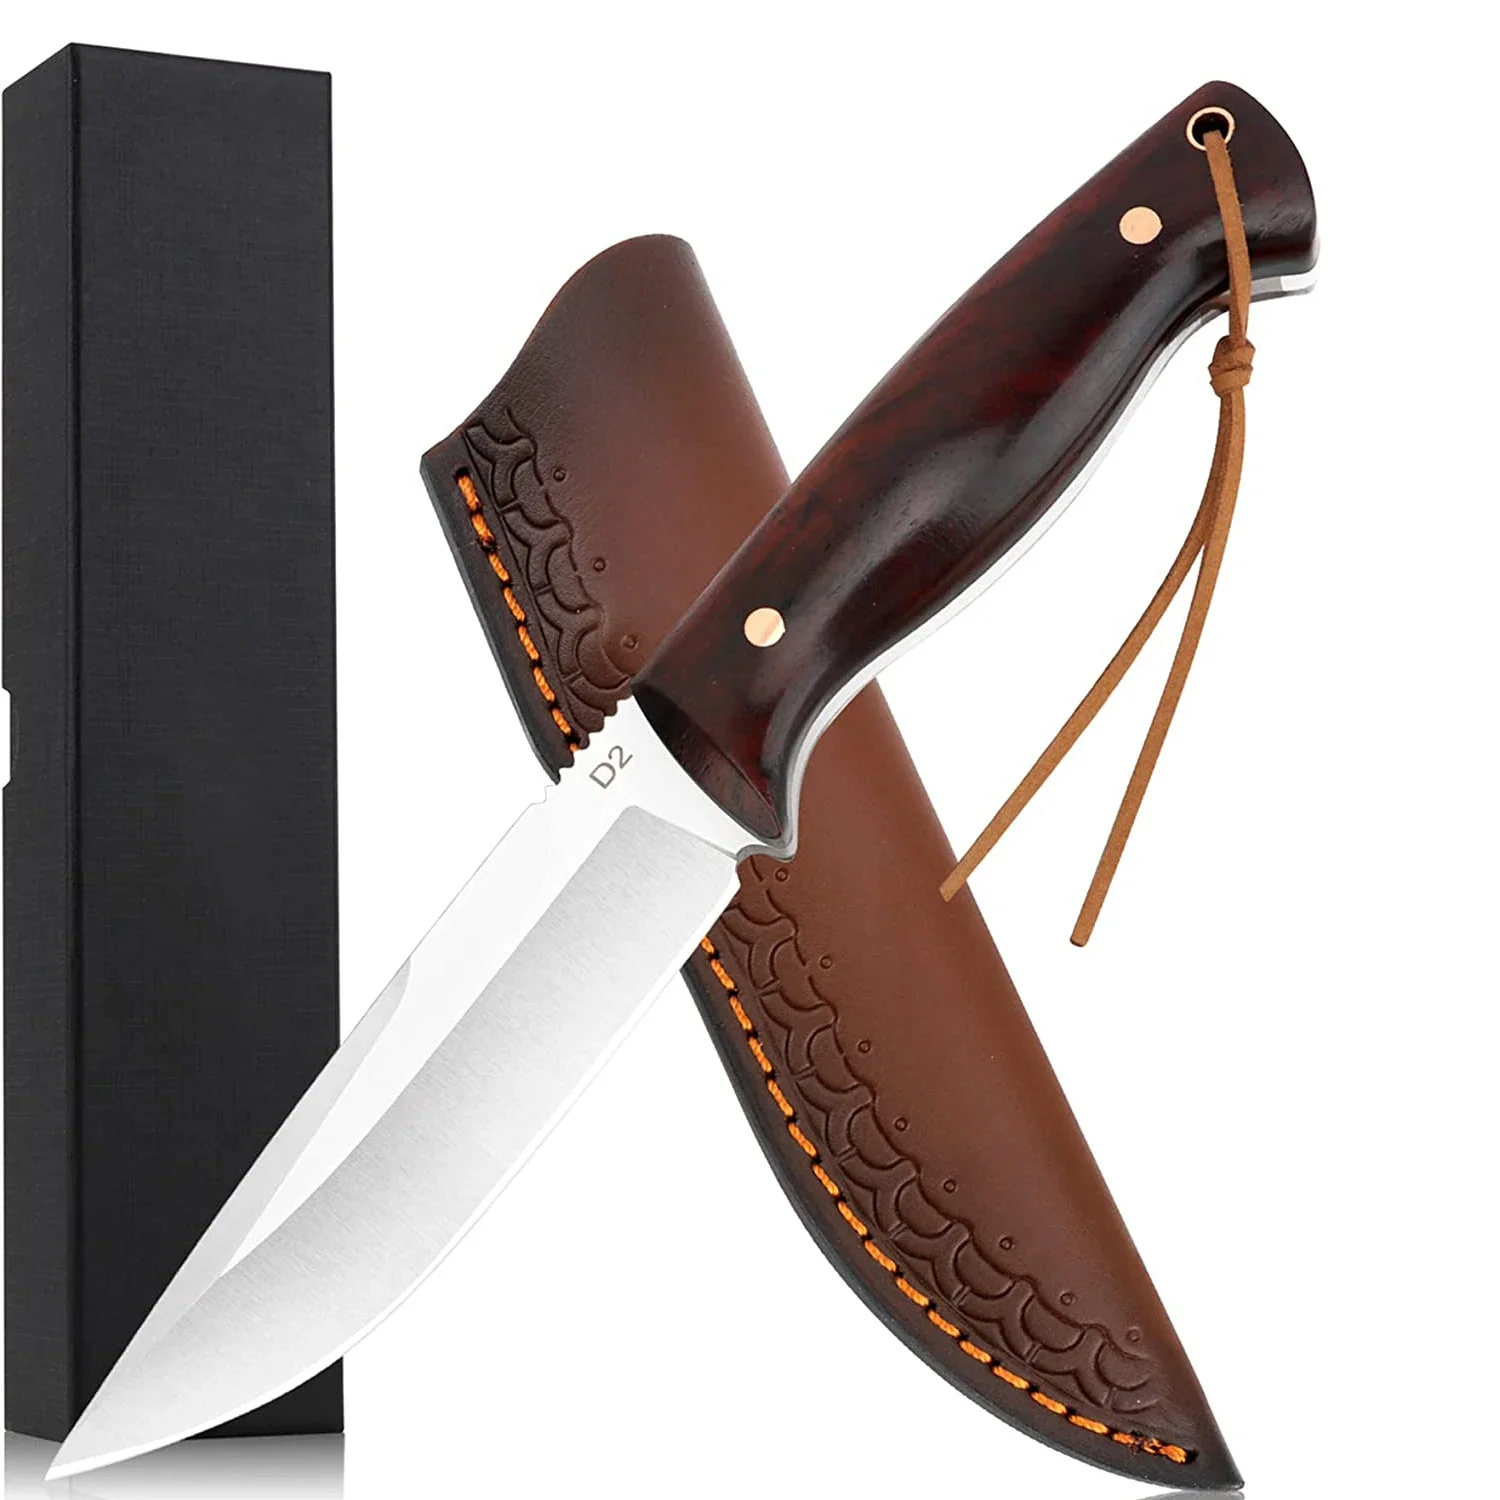 

Стальной нож с фиксированным лезвием D2, полноразмерный нож с кожаным футляром, твердый и острый охотничий нож для выживания на природе, удобная натуральная ручка